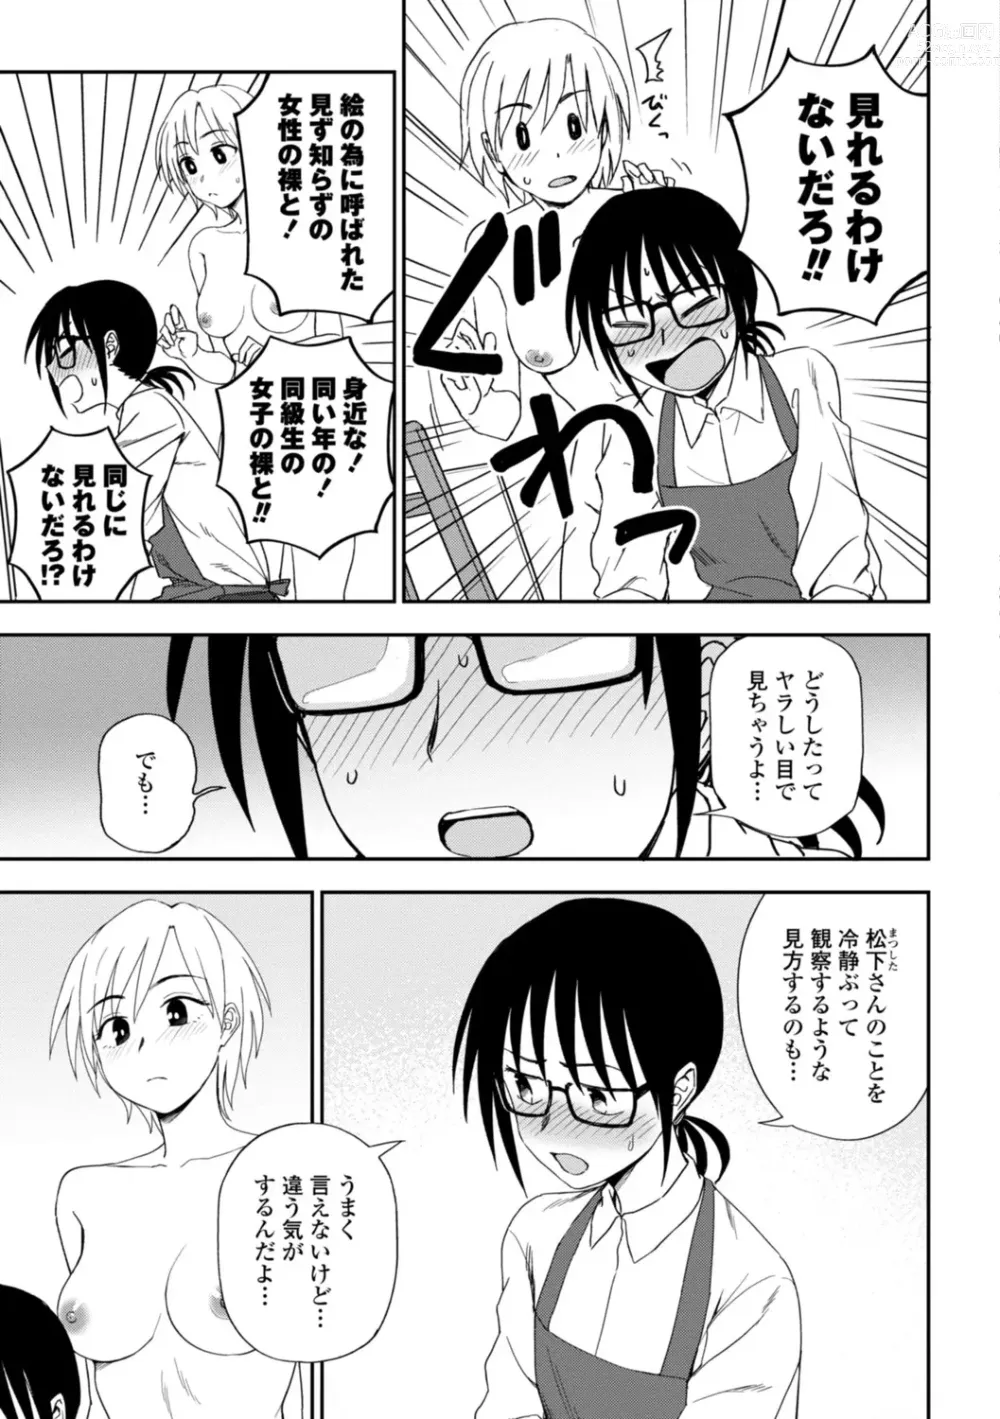 Page 179 of manga Watashi no Subete Sasagemasu - Ill give you all of mine.